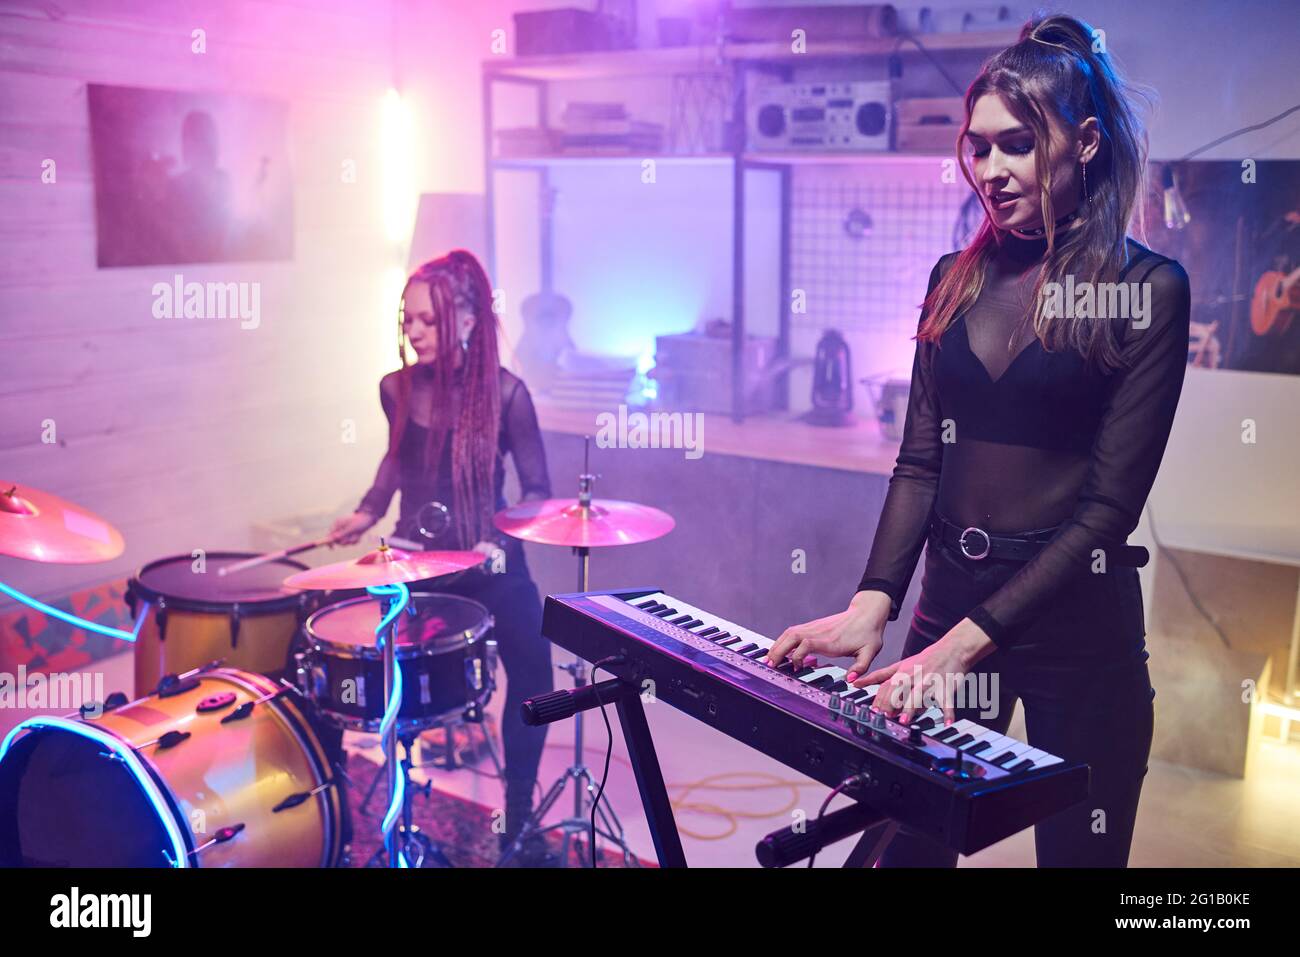 Deux filles jouant des instruments de musique dans un studio d'enregistrement sonore Banque D'Images